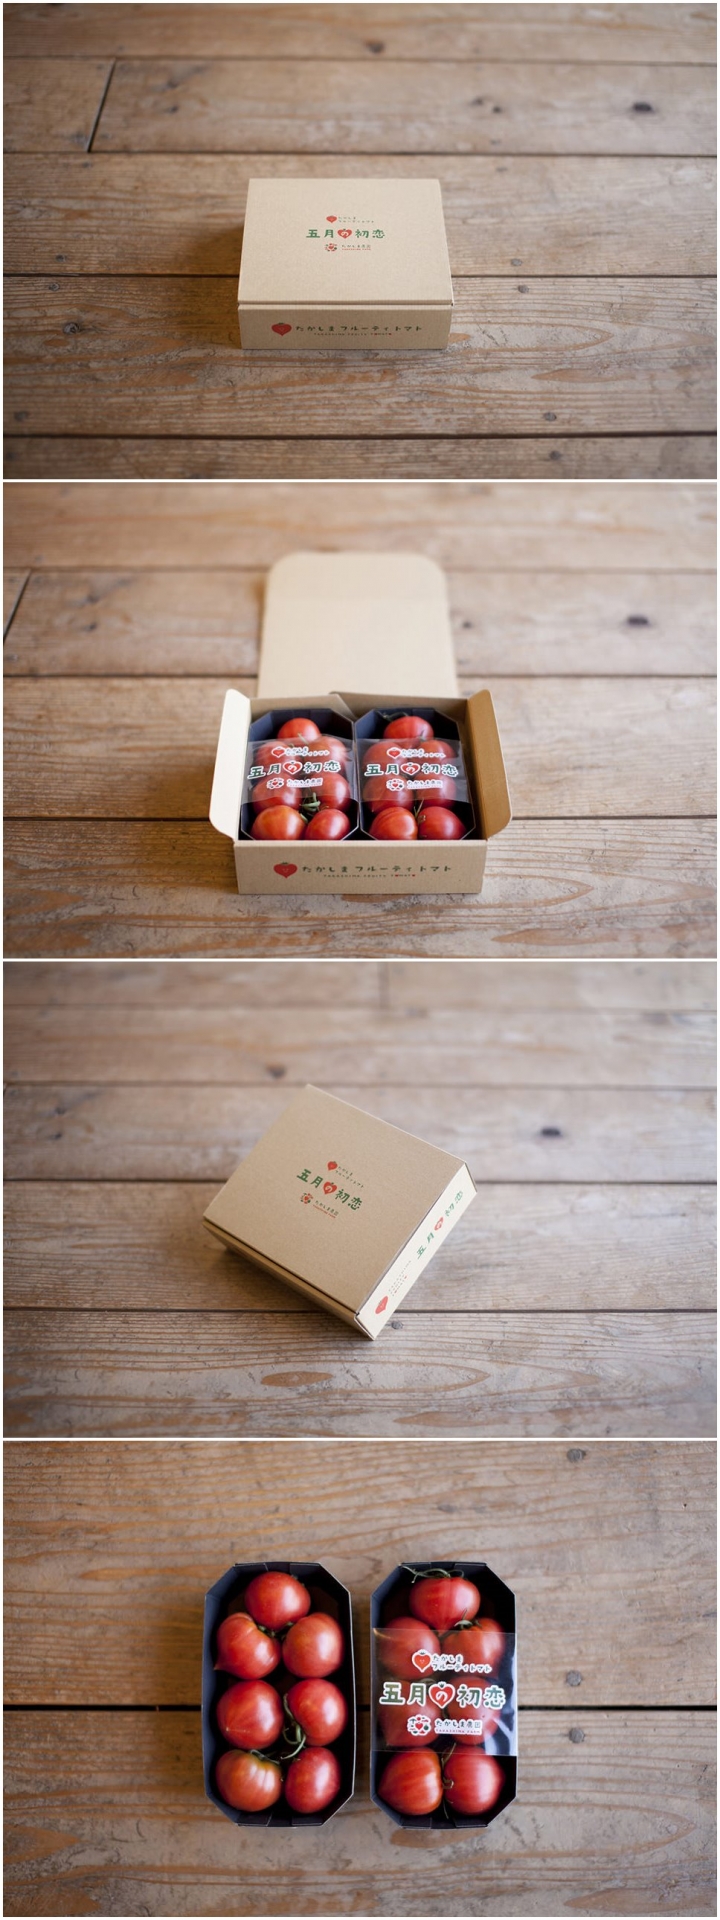 水果包装盒印刷_郑州纸抽盒印刷_河南 印刷 包装